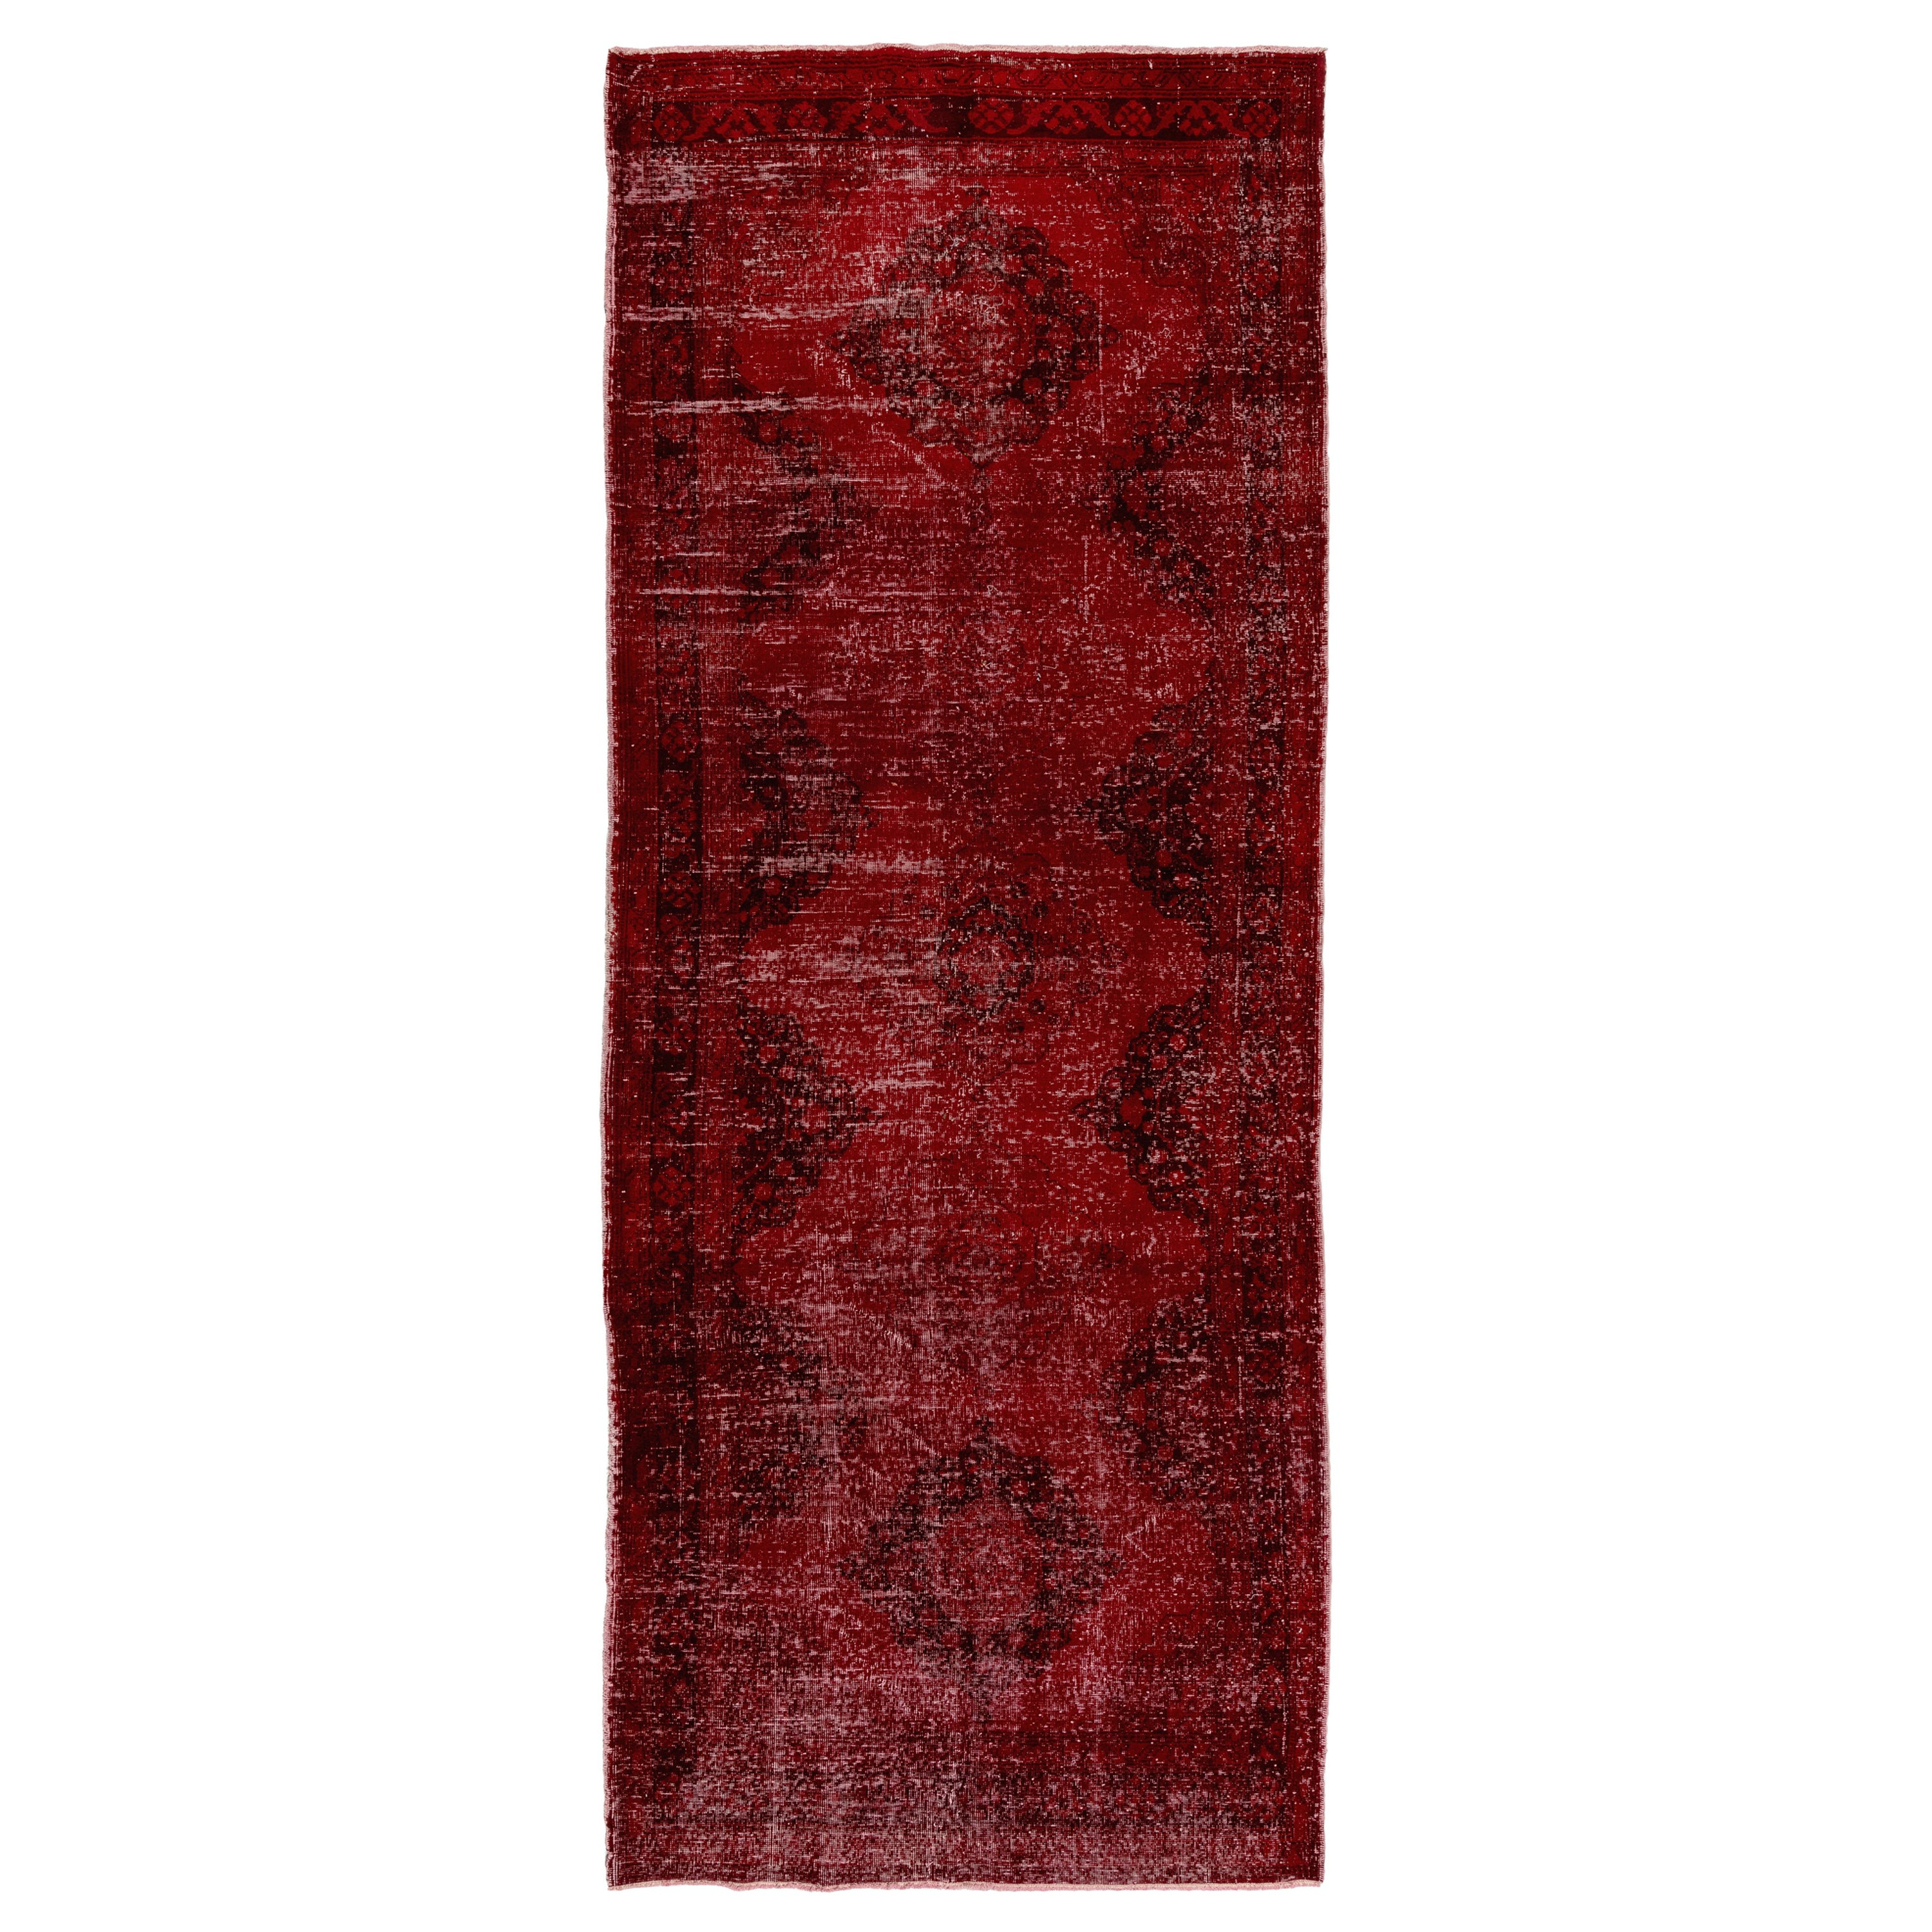 4.8x12.2 Ft Handmade Turkish Runner Rug in Burgundy Red, Modern Corridor Carpet For Sale